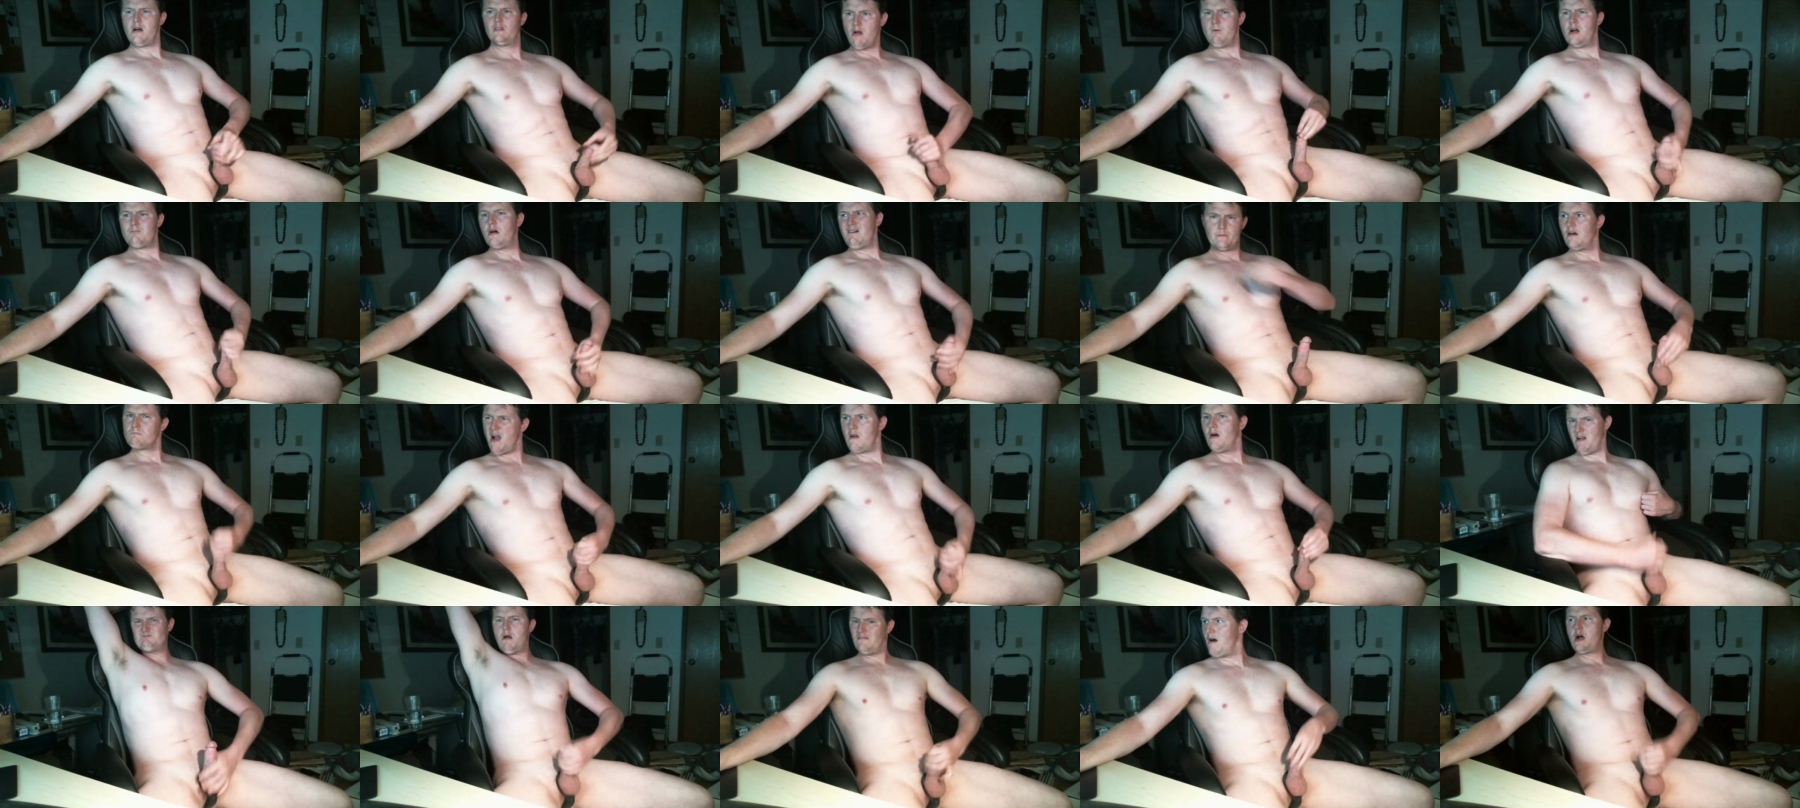 Enjoytheshow83  04-08-2021 Male Naked